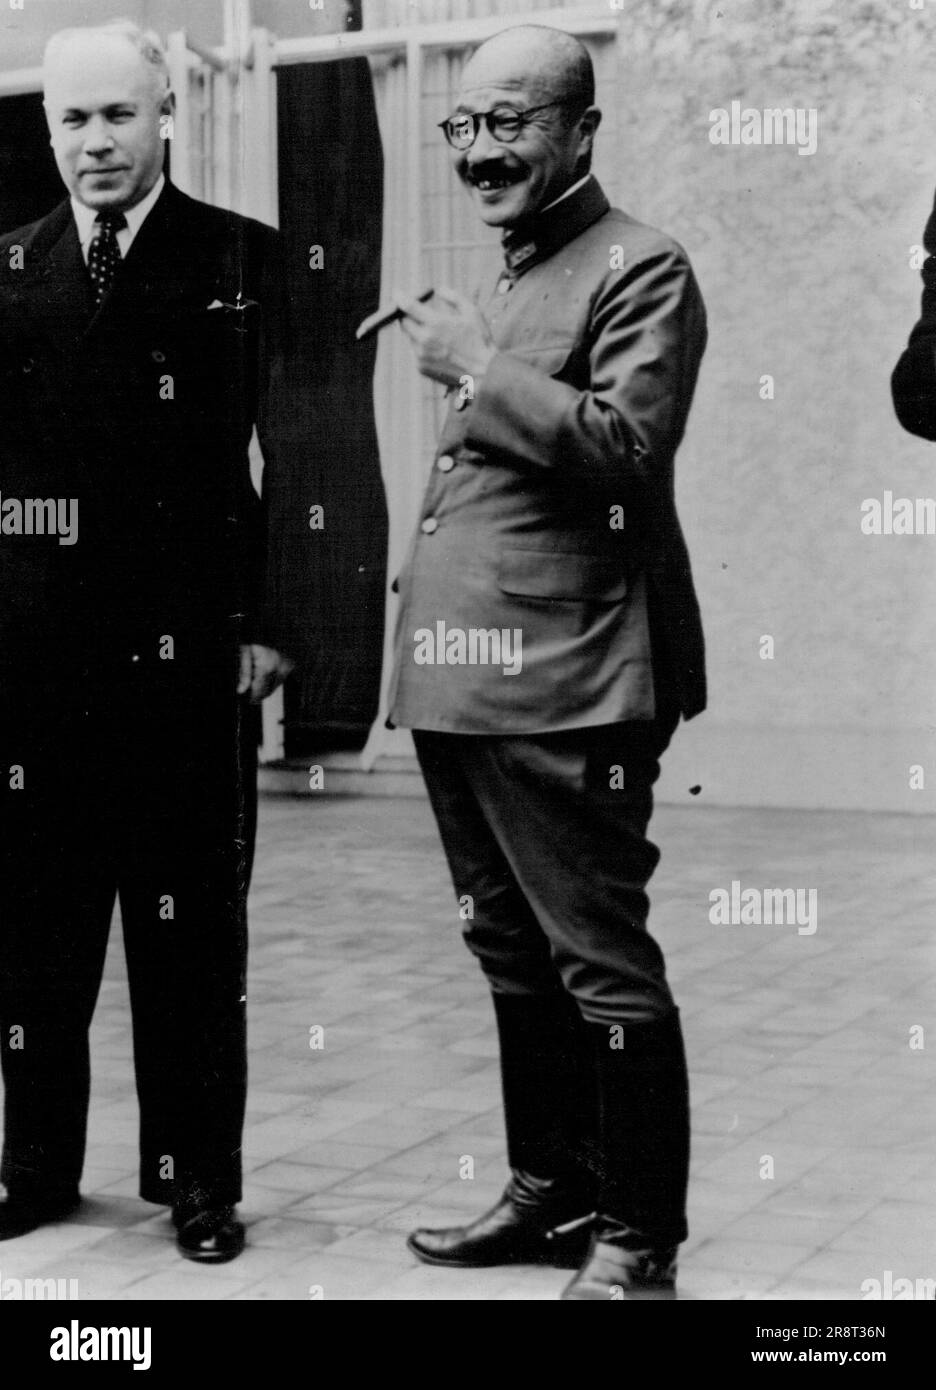 General Tojo, Premier of Japan. October 26, 1941. Stock Photo